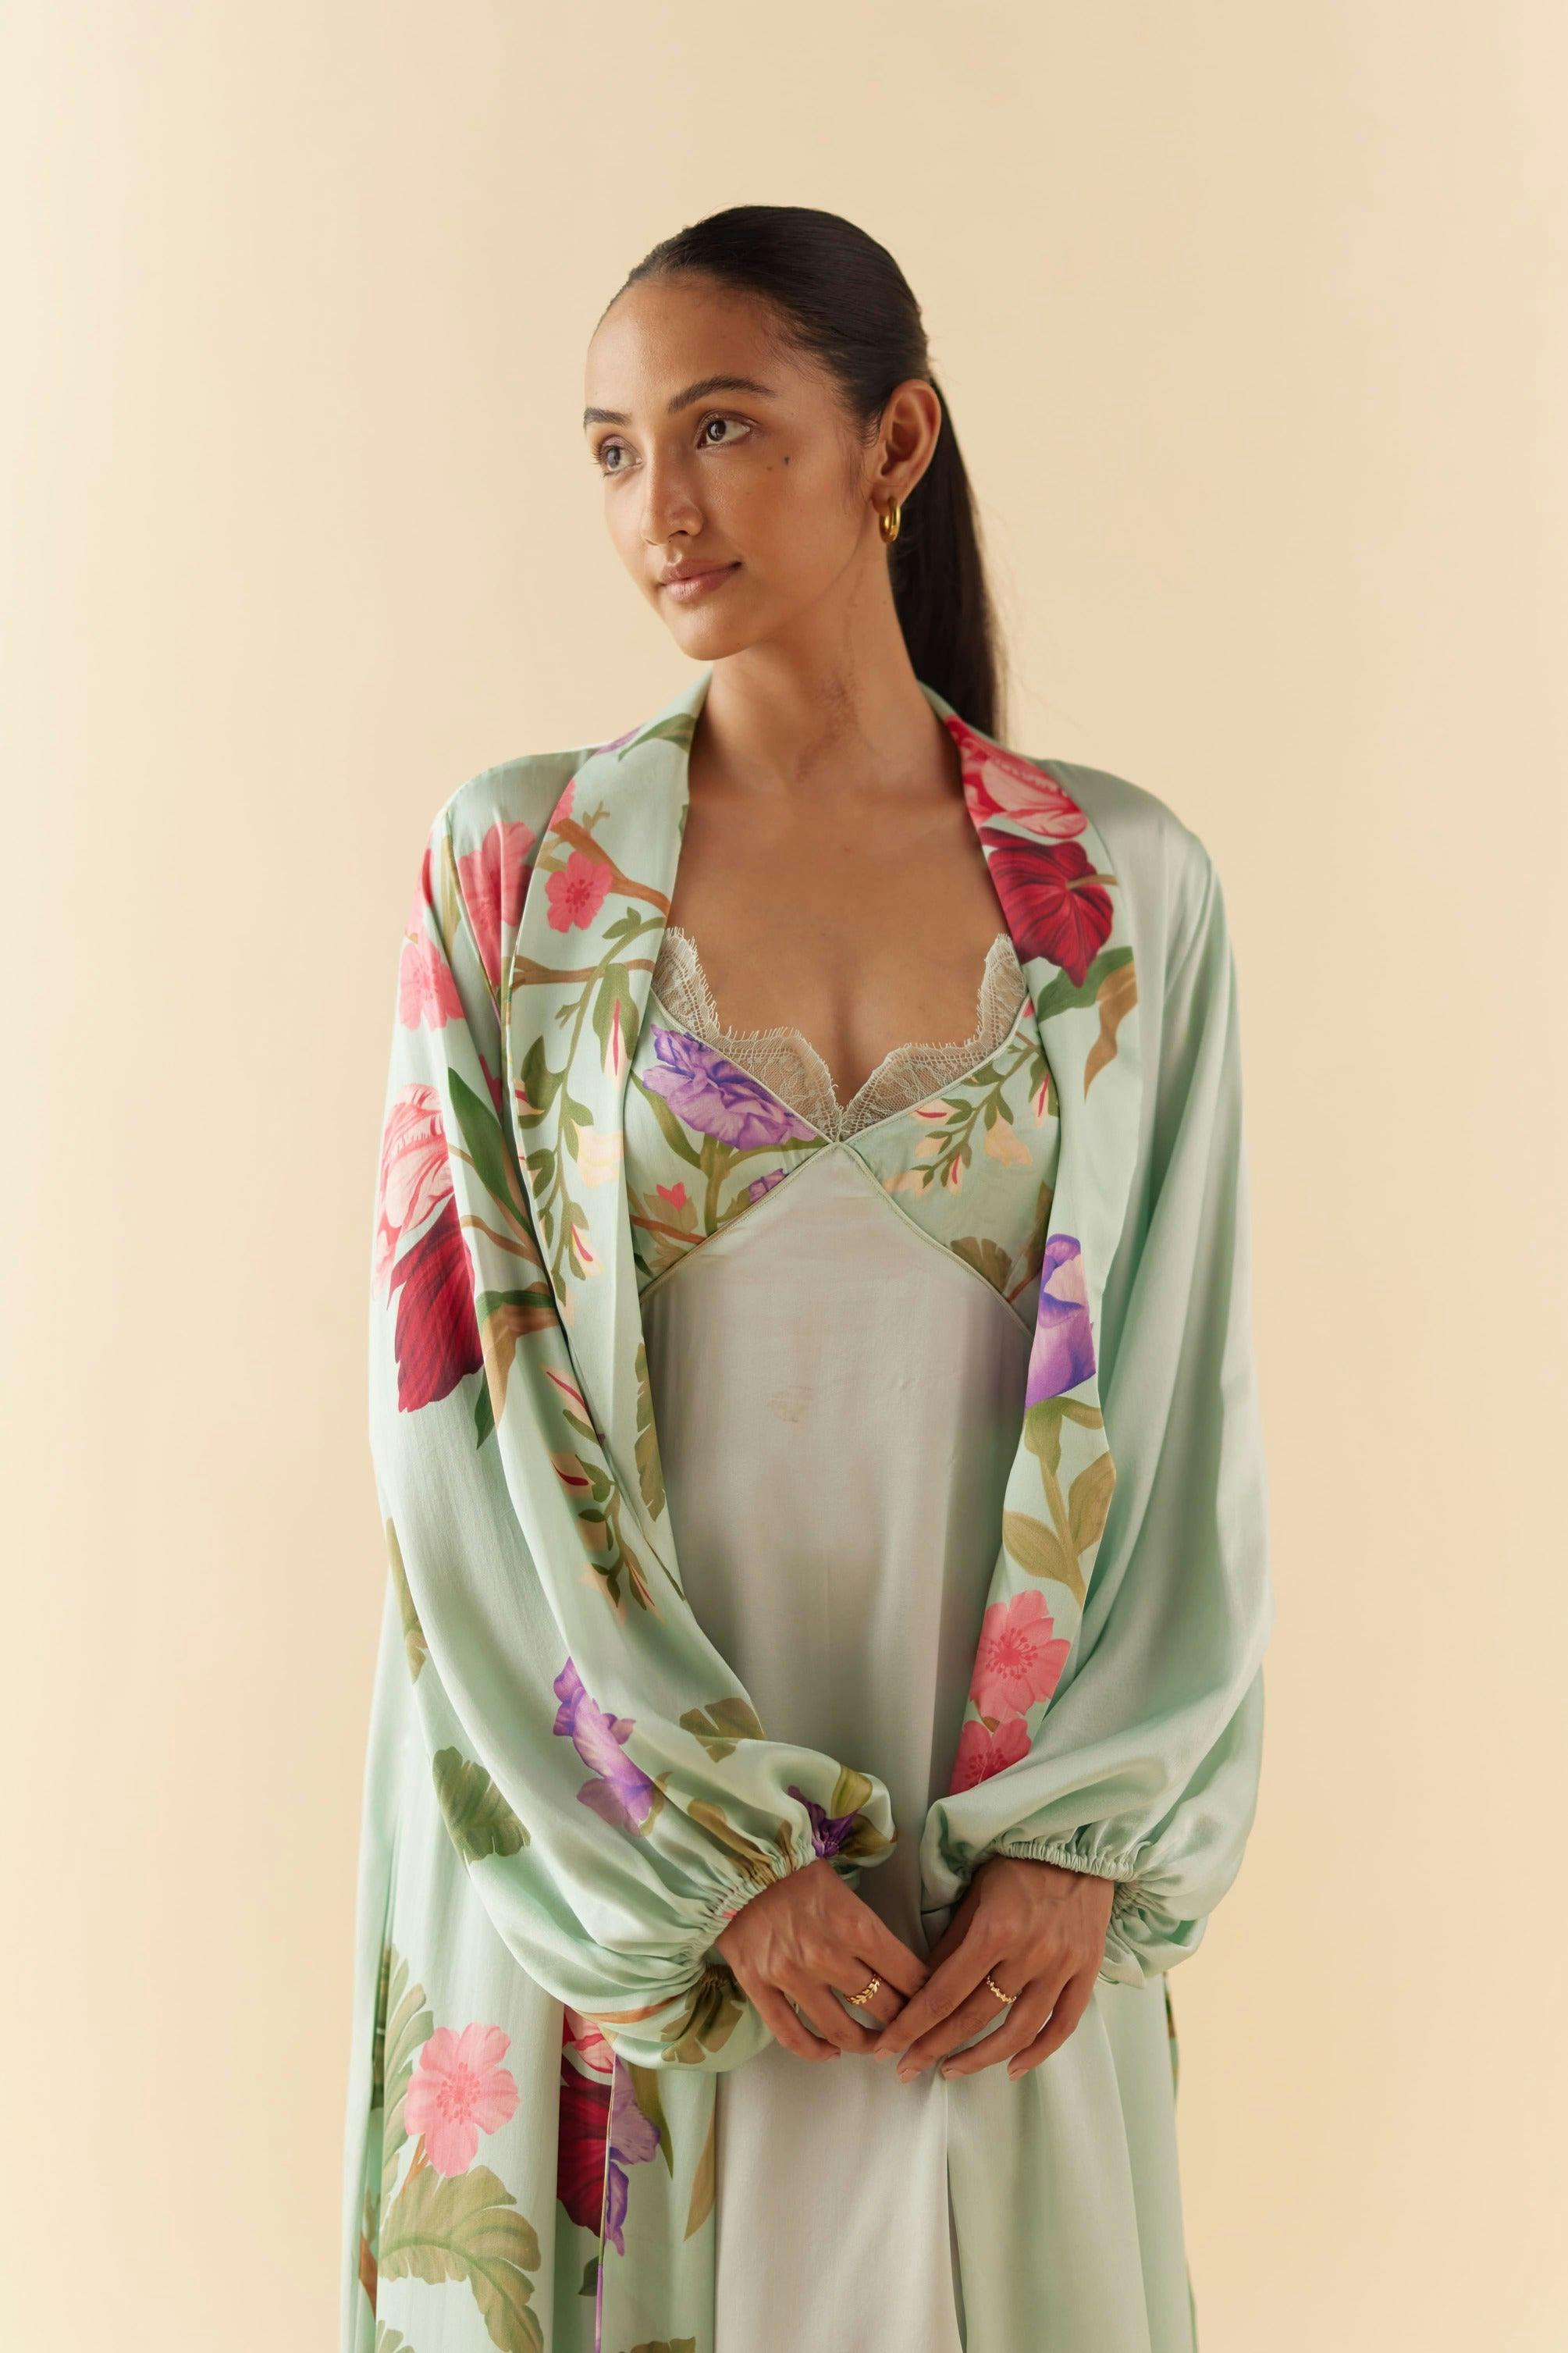 Thumbnail preview #1 for Celeste Floral Dream Silk Robe & Slip Set - Full Length